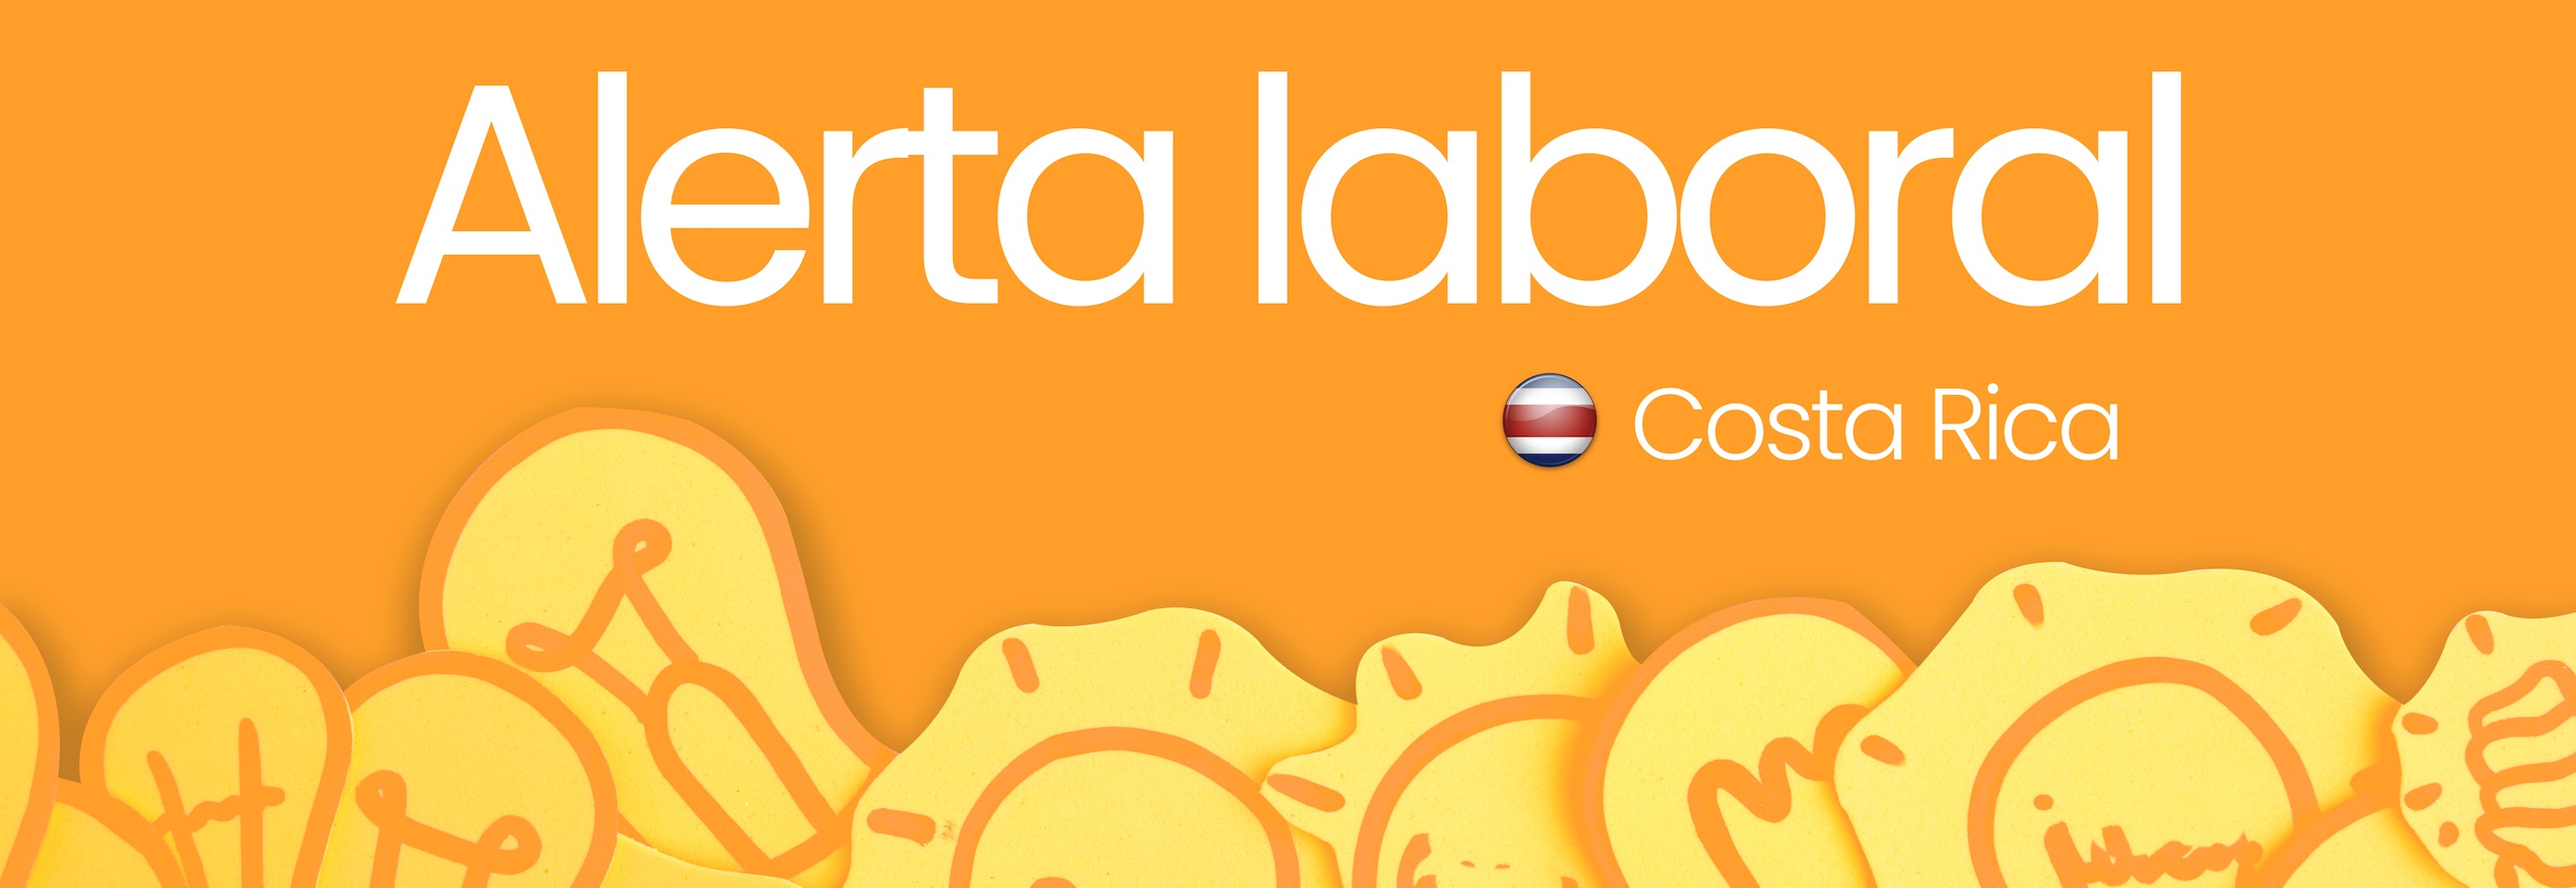 Alerta laboral 2019 (Costa Rica) ESP 2